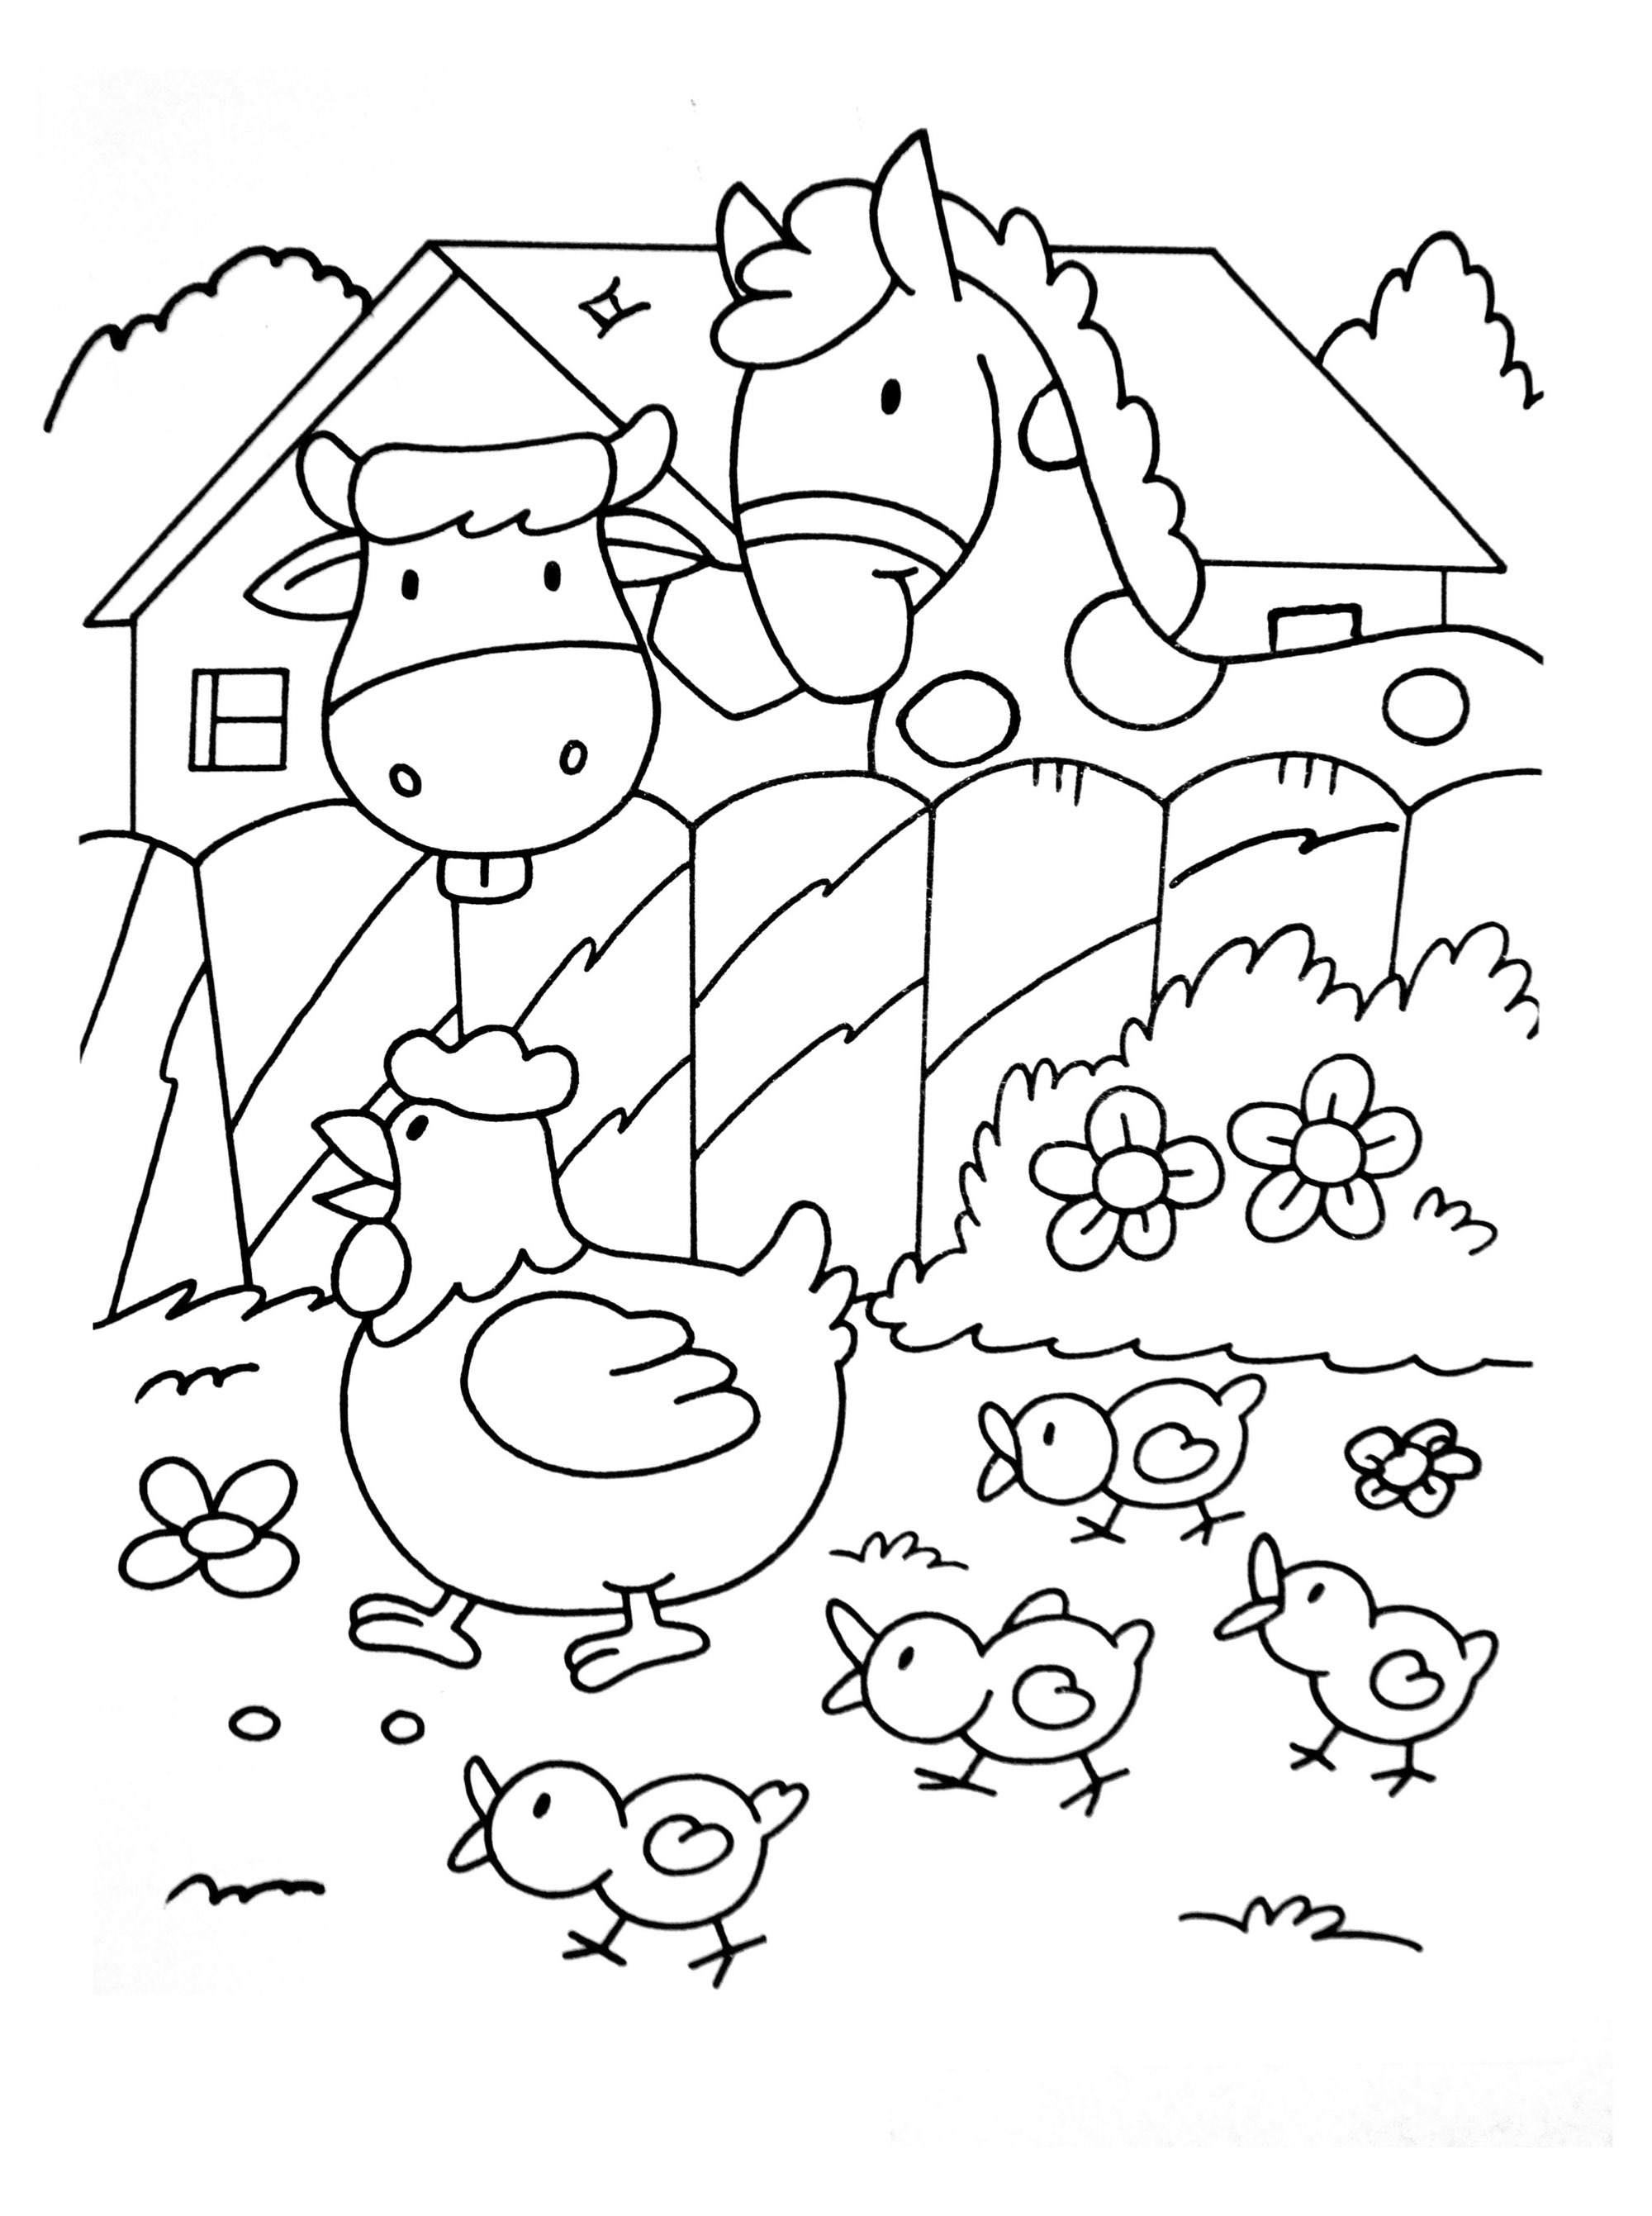 Páginas para colorear de Caballos sencillos para niños